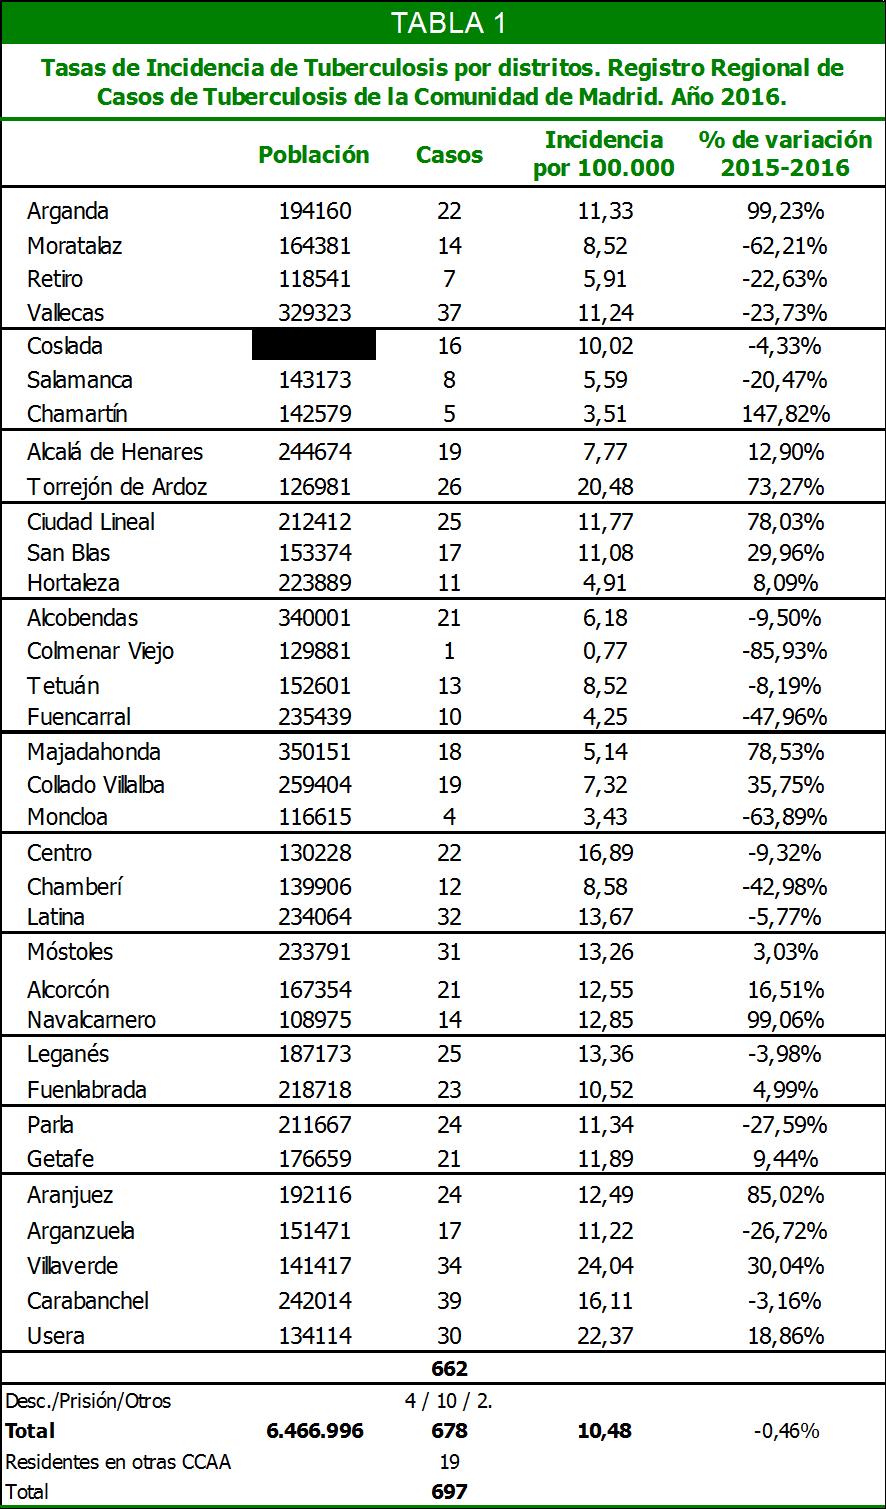 En el municipio de Madrid se han detectado 337 casos, con una incidencia de 10,65 casos por 100.000 habitantes, un 12,67% inferior a la observada en el año 2015 (12,19 casos por 100.000 habitantes).